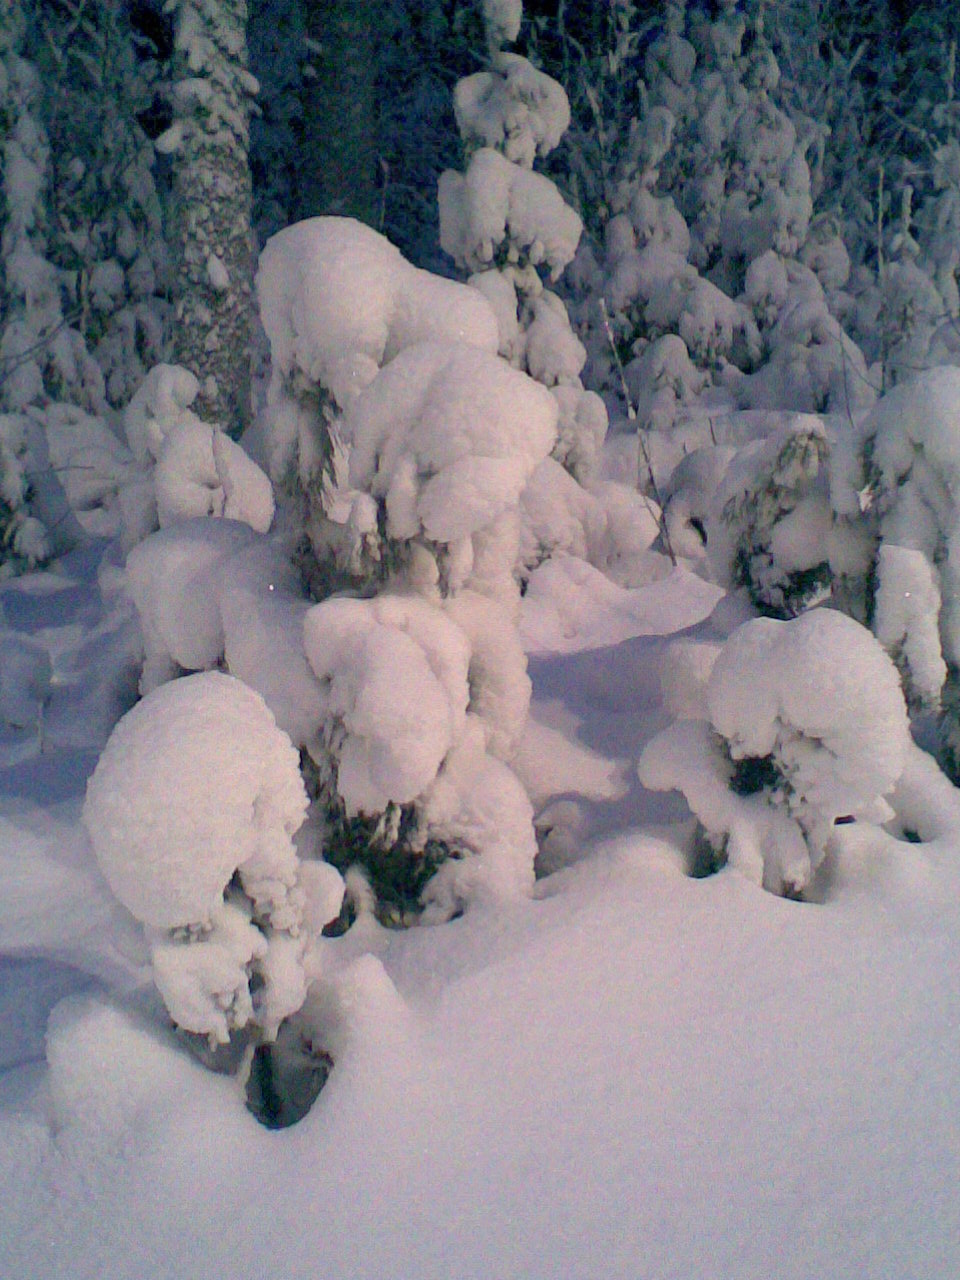 Lumisia
puita